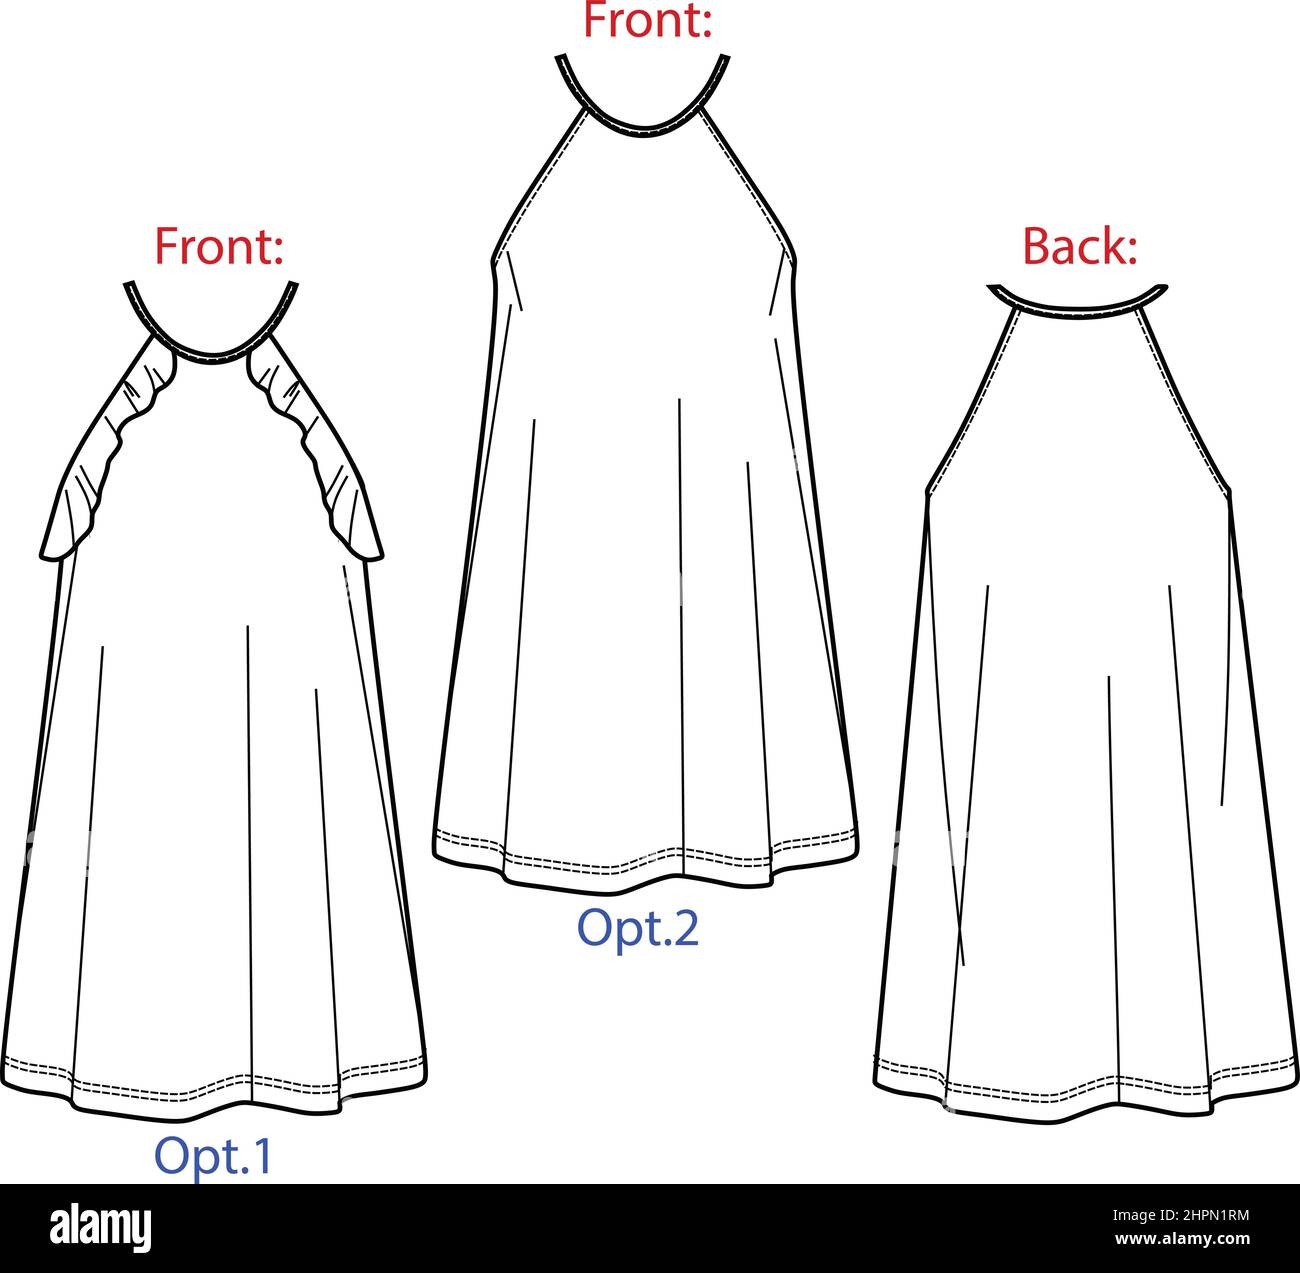 Vector short évasé robe mode CAD, femme une robe de forme avec des franges dessin technique, robe avec fines bretelles modèle, plat, croquis. JERS Illustration de Vecteur